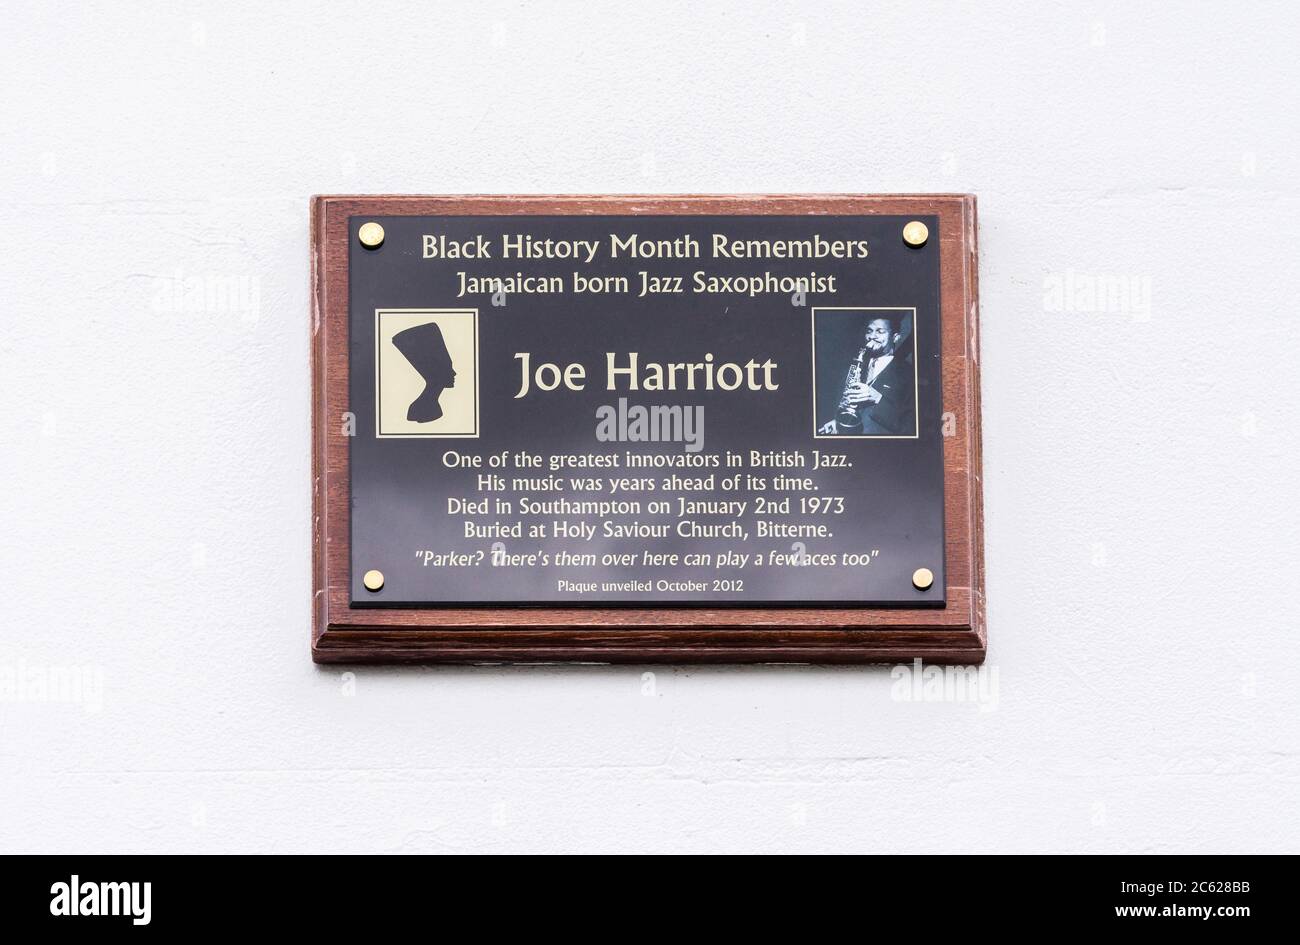 Le mois de l'histoire des Noirs se souvient de la plaque de reconnaissance de Joe Harriott, un musicien de jazz noir de Southampton, Angleterre, Royaume-Uni Banque D'Images